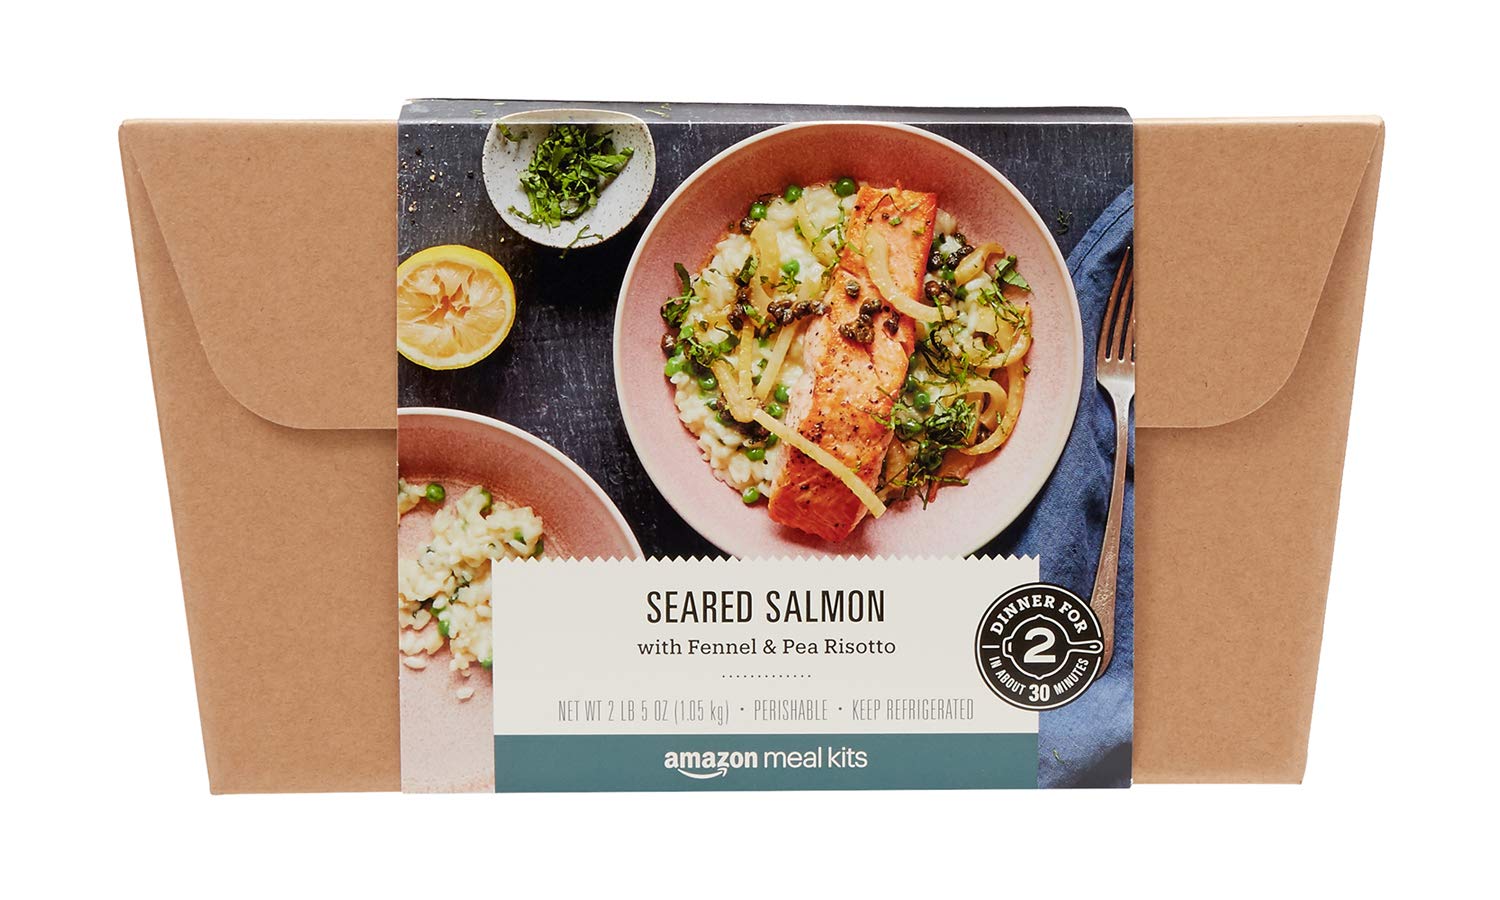 Amazon Meal Kit seared salmon